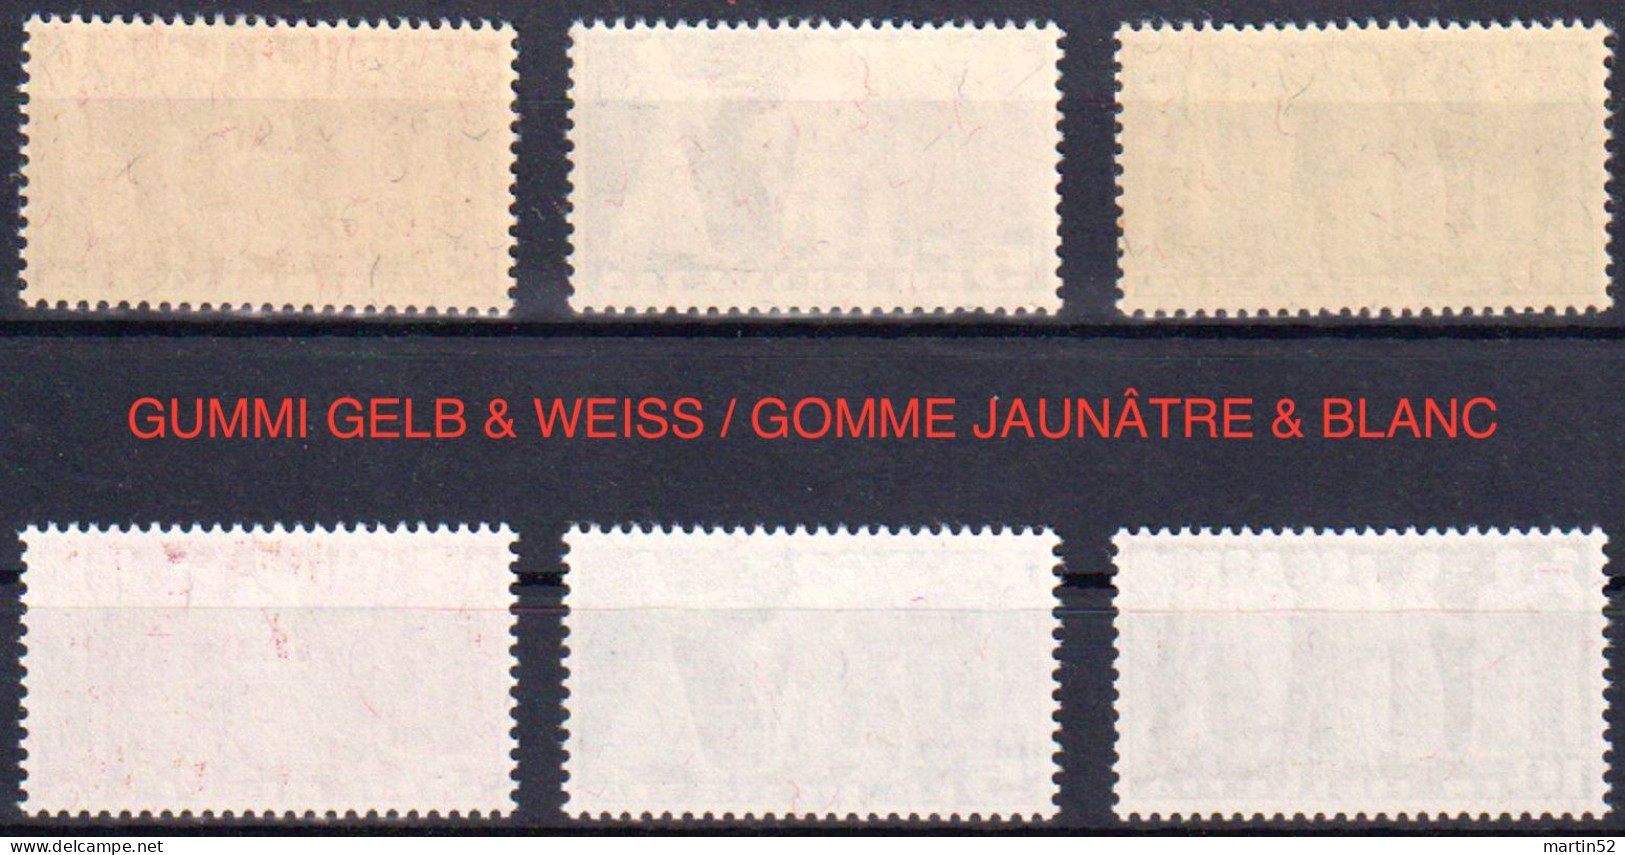 Schweiz Suisse 1942: Gelber Gummi+papier Et Gomme Jaune Zu 216w-218w Mi 328w-330w Yv B313-B315 ** MNH (Zu CHF 260.00) - Ungebraucht